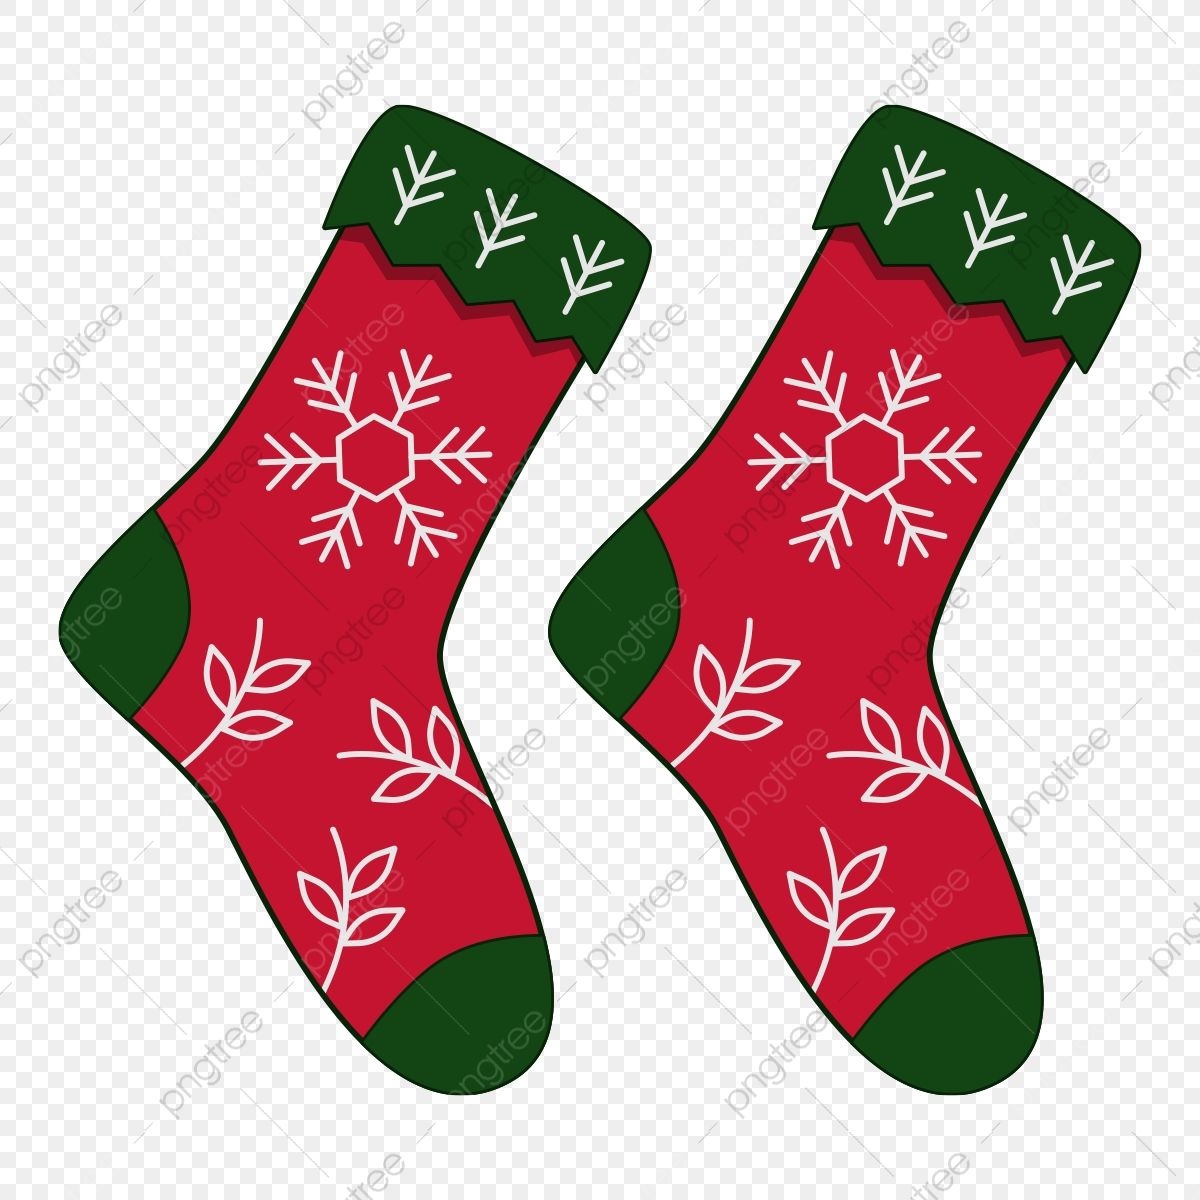 Free stocking socks, Download Free stocking socks png images, Free ...